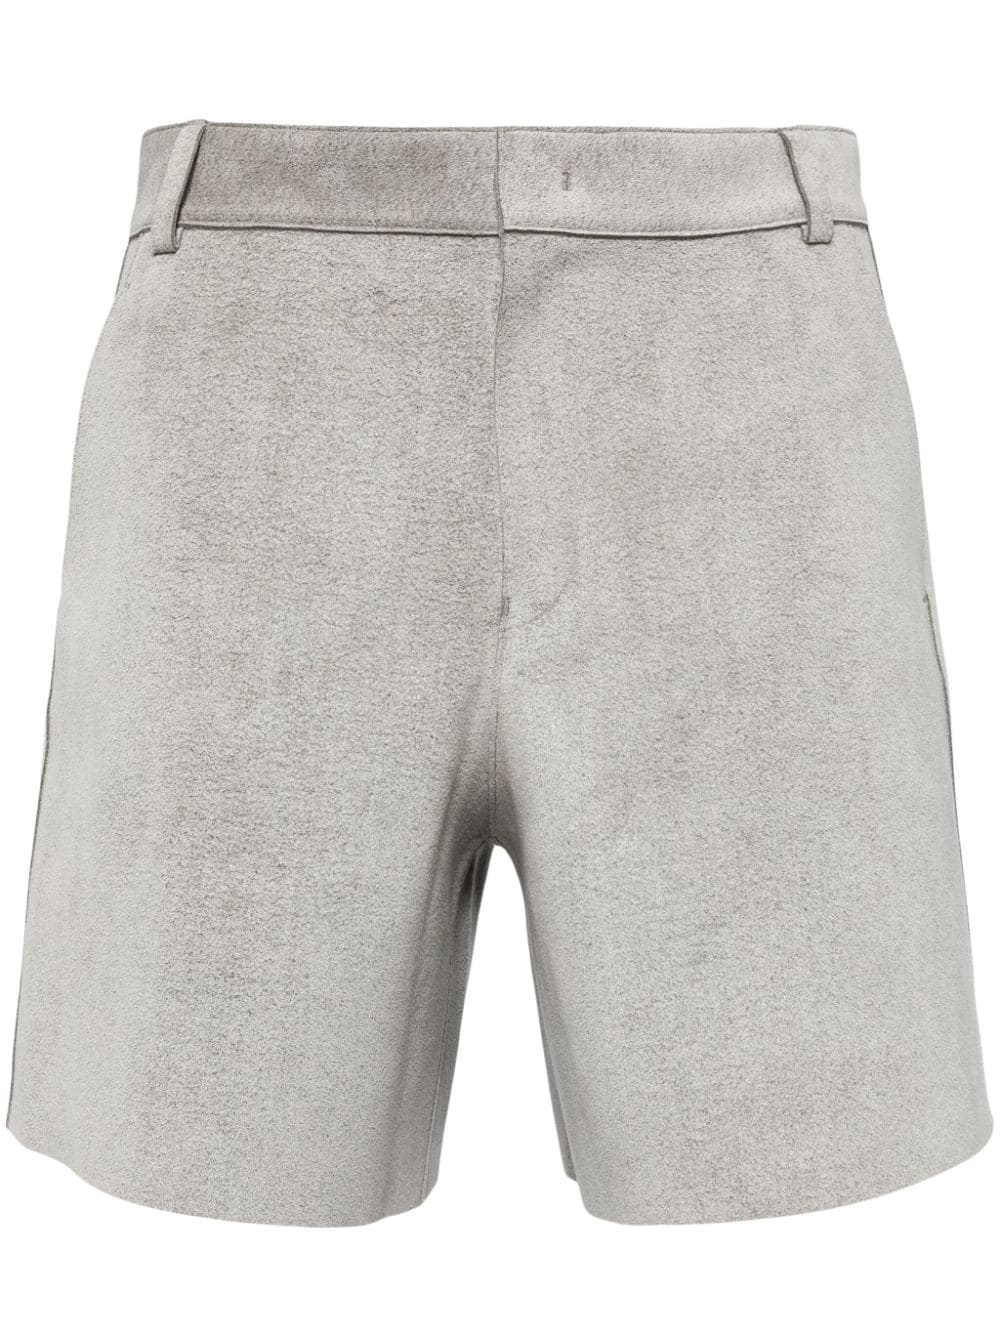 JNBY flared shorts - Grey von JNBY